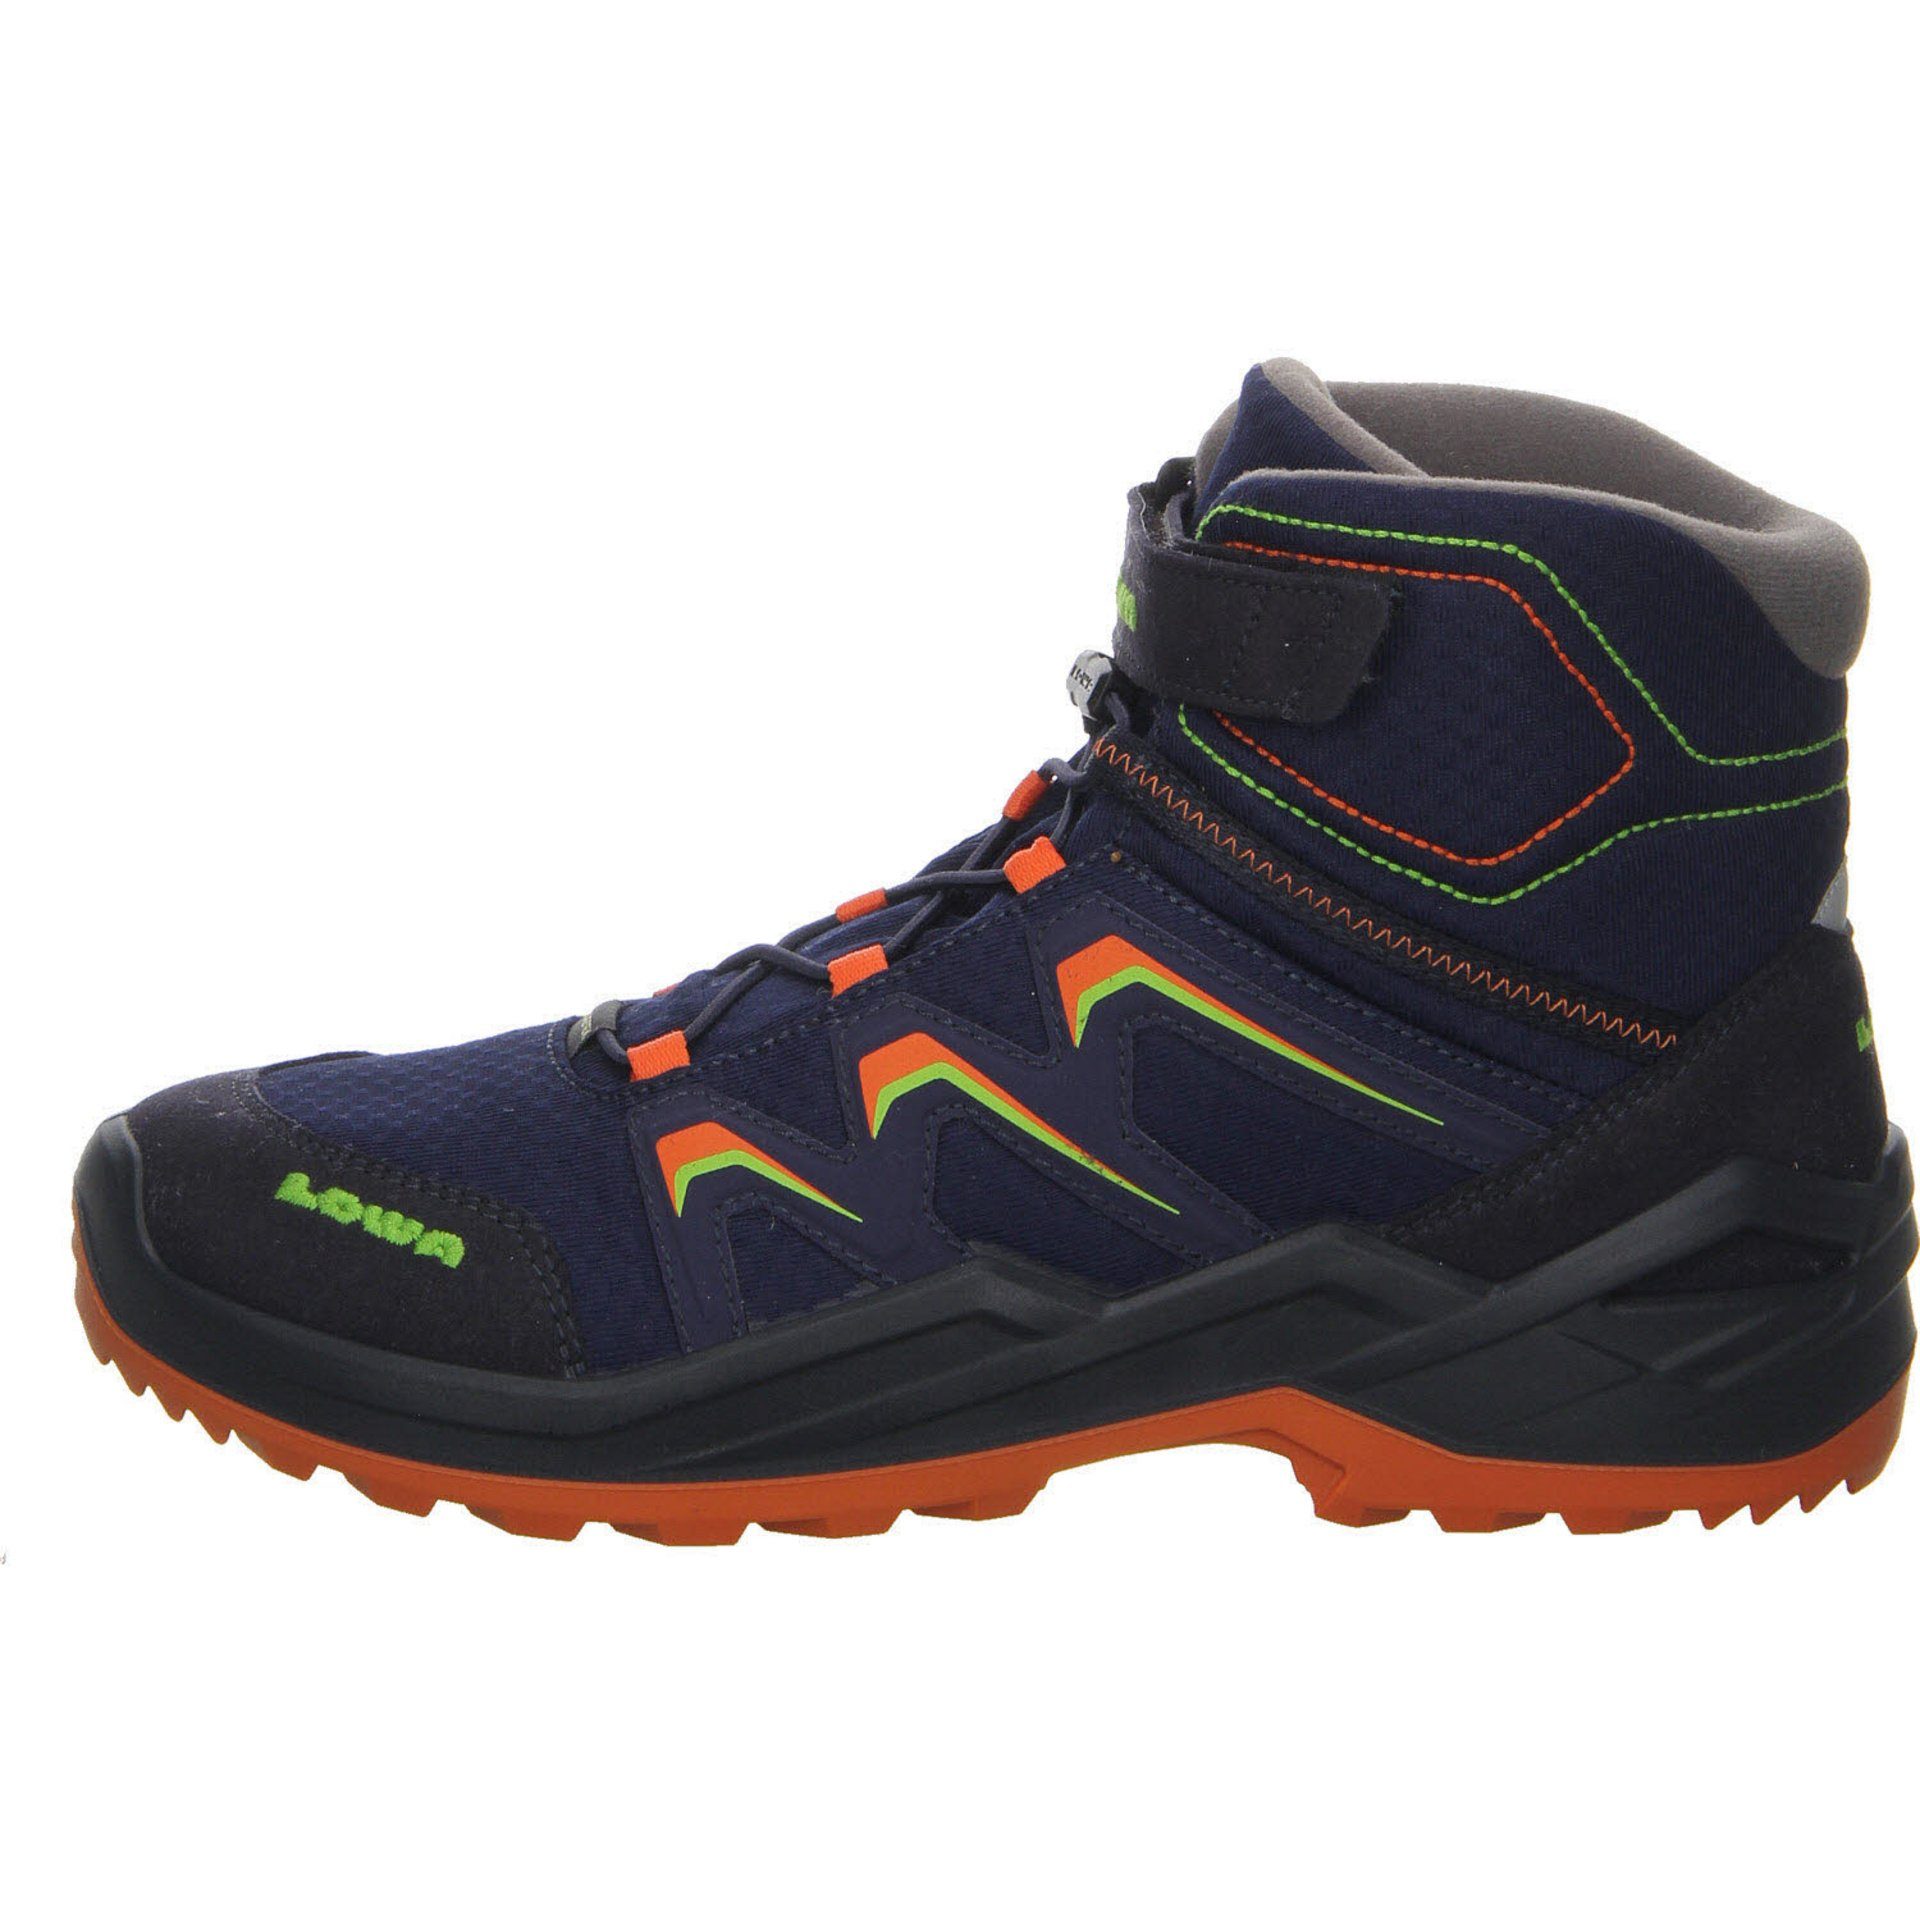 Lowa Jungen Stiefel Maddox navy/orange Schuhe Textil Warm GTX Stiefel Boots